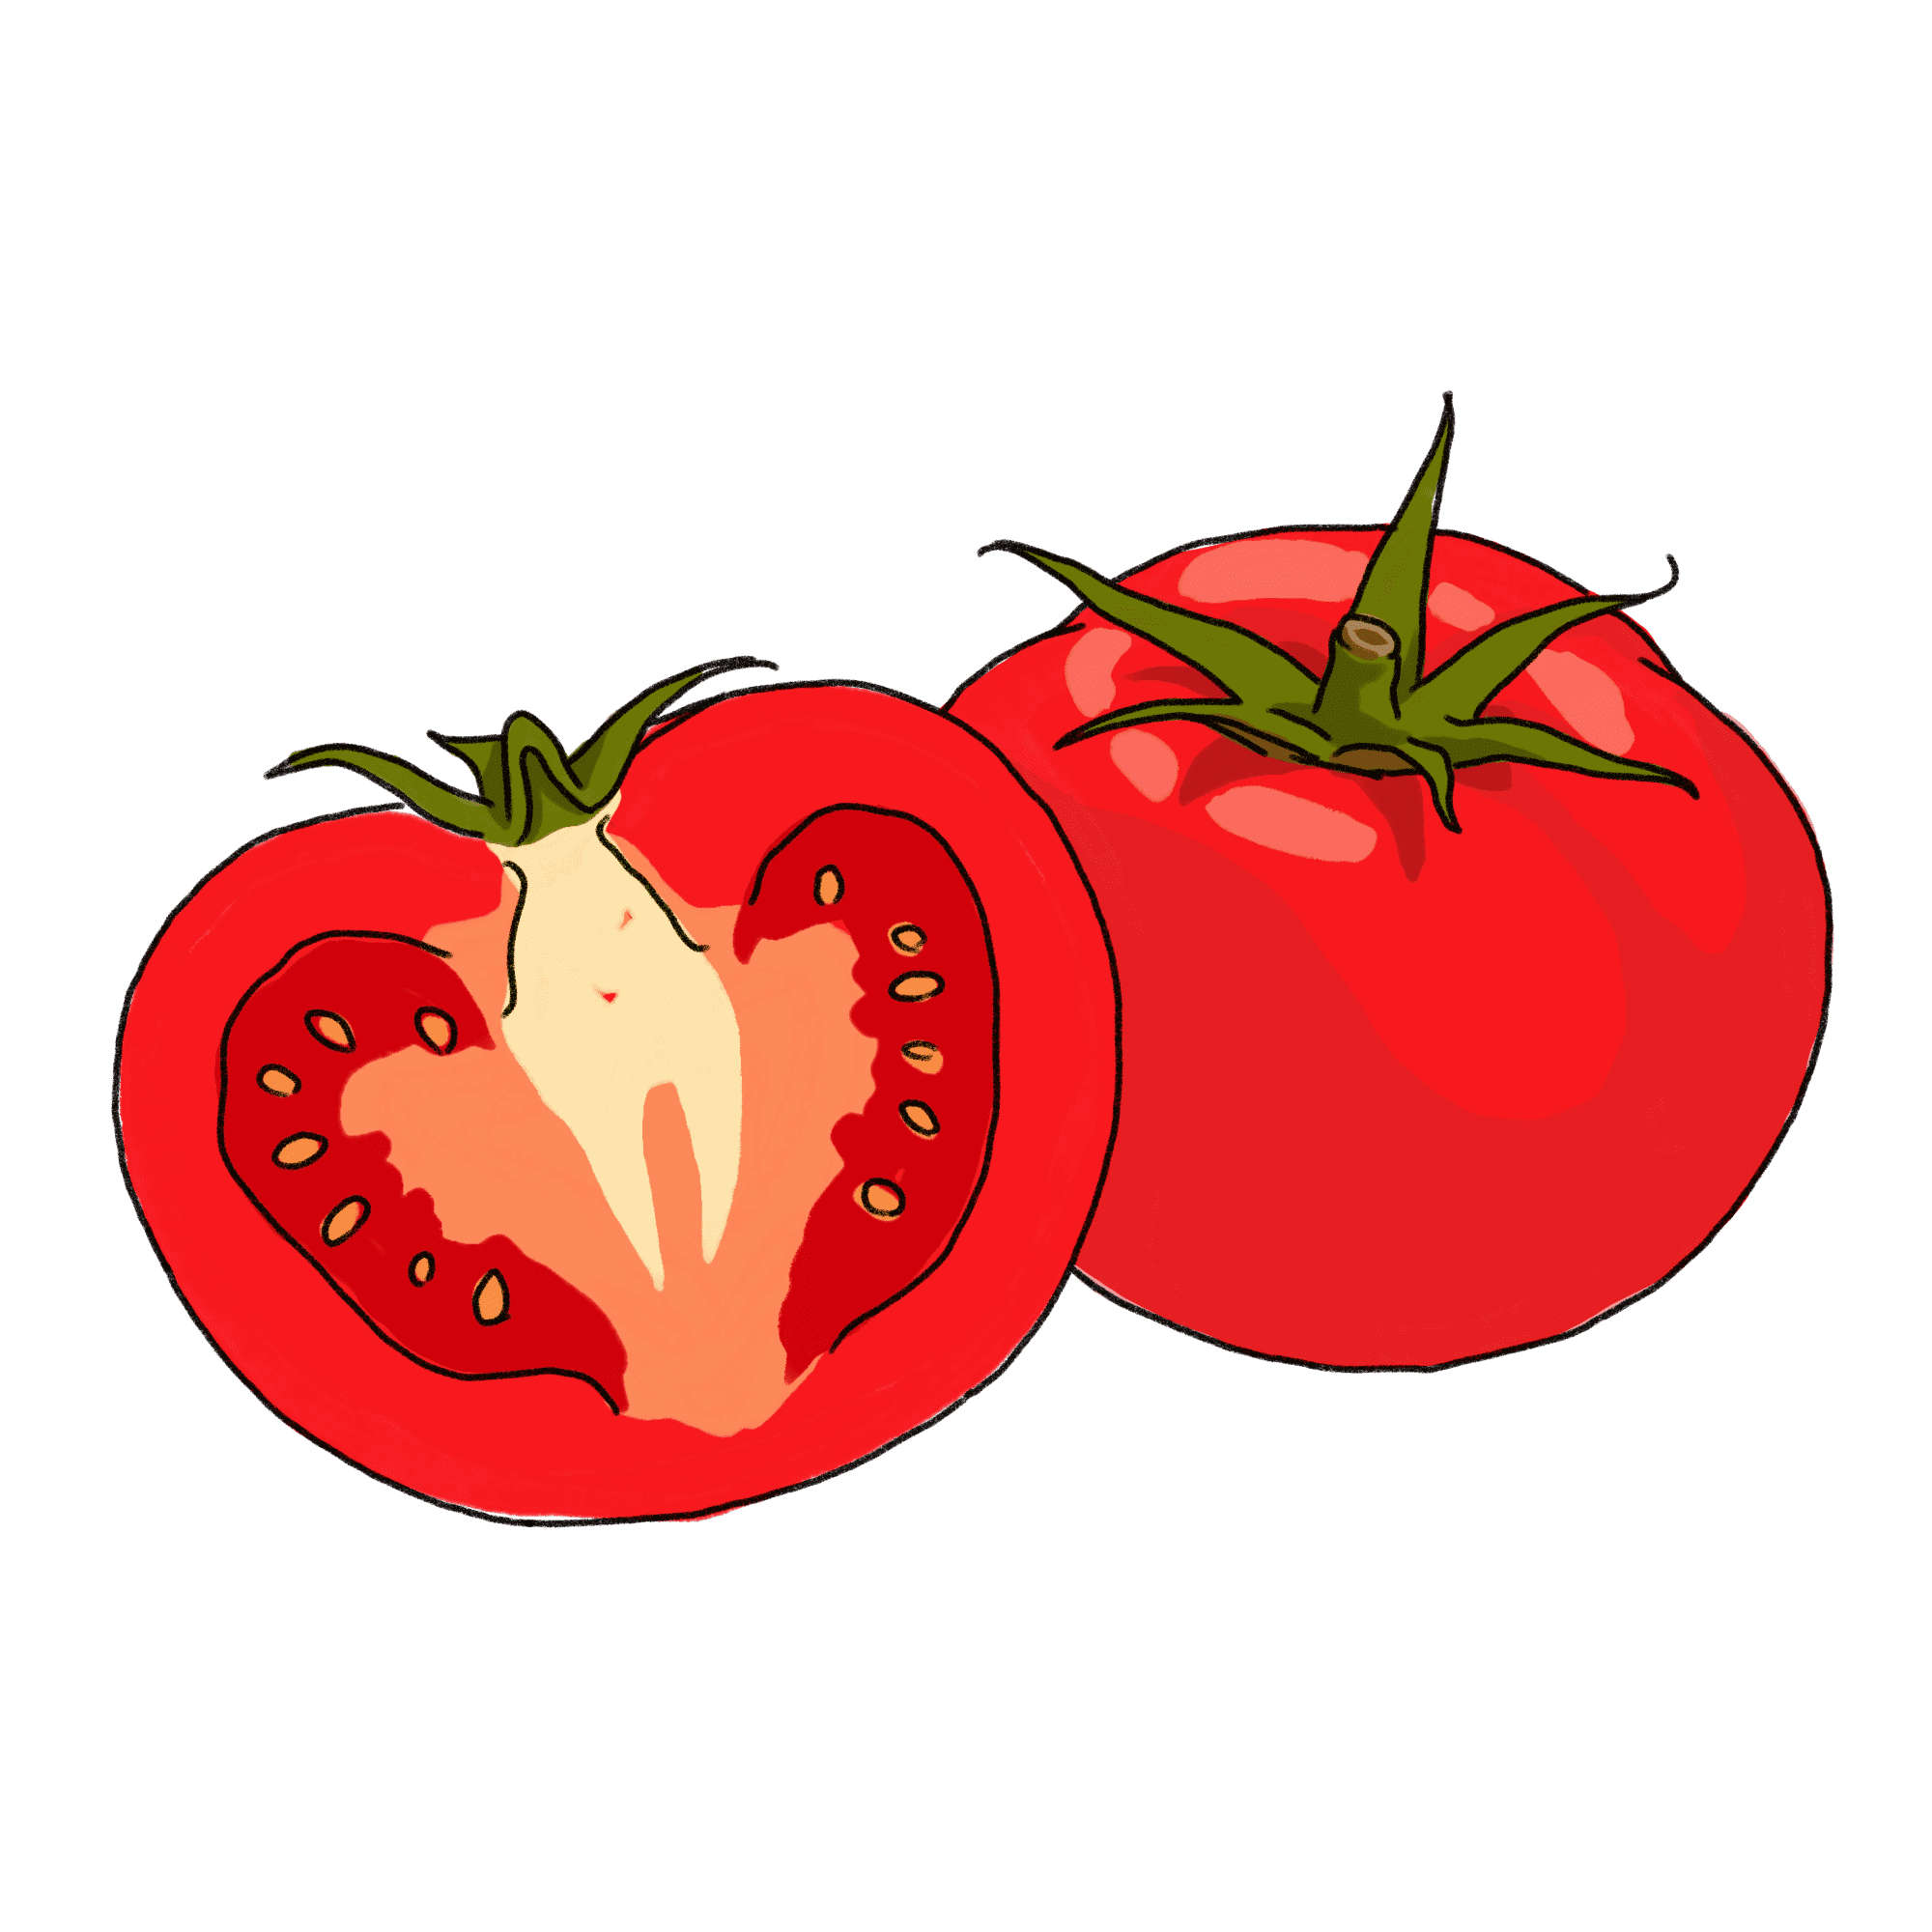 トマトのイラスト 03 フリー素材 Greenstock40